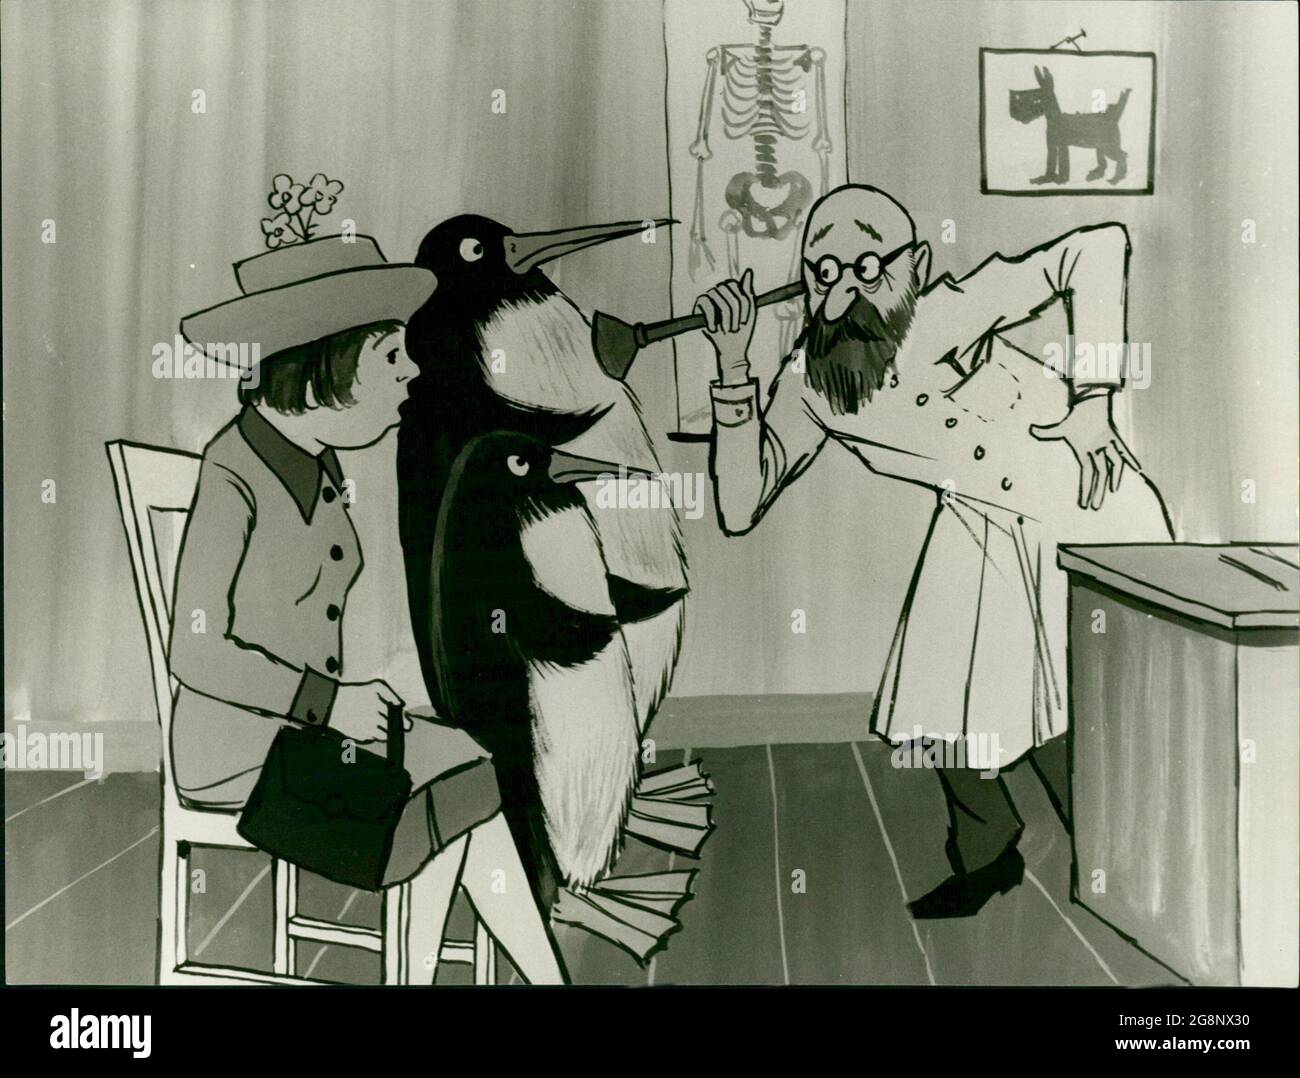 Frau Fröhlich ist mit ihrem Mann und ihrer Tochter Charthrinchen, die sich in Pinguine verwandelt haben, zum Tierarzt gegangen, denn schließlich will sie, dass die beiden sich in ihrer Tiergestalt wohlfühlen. Banque D'Images